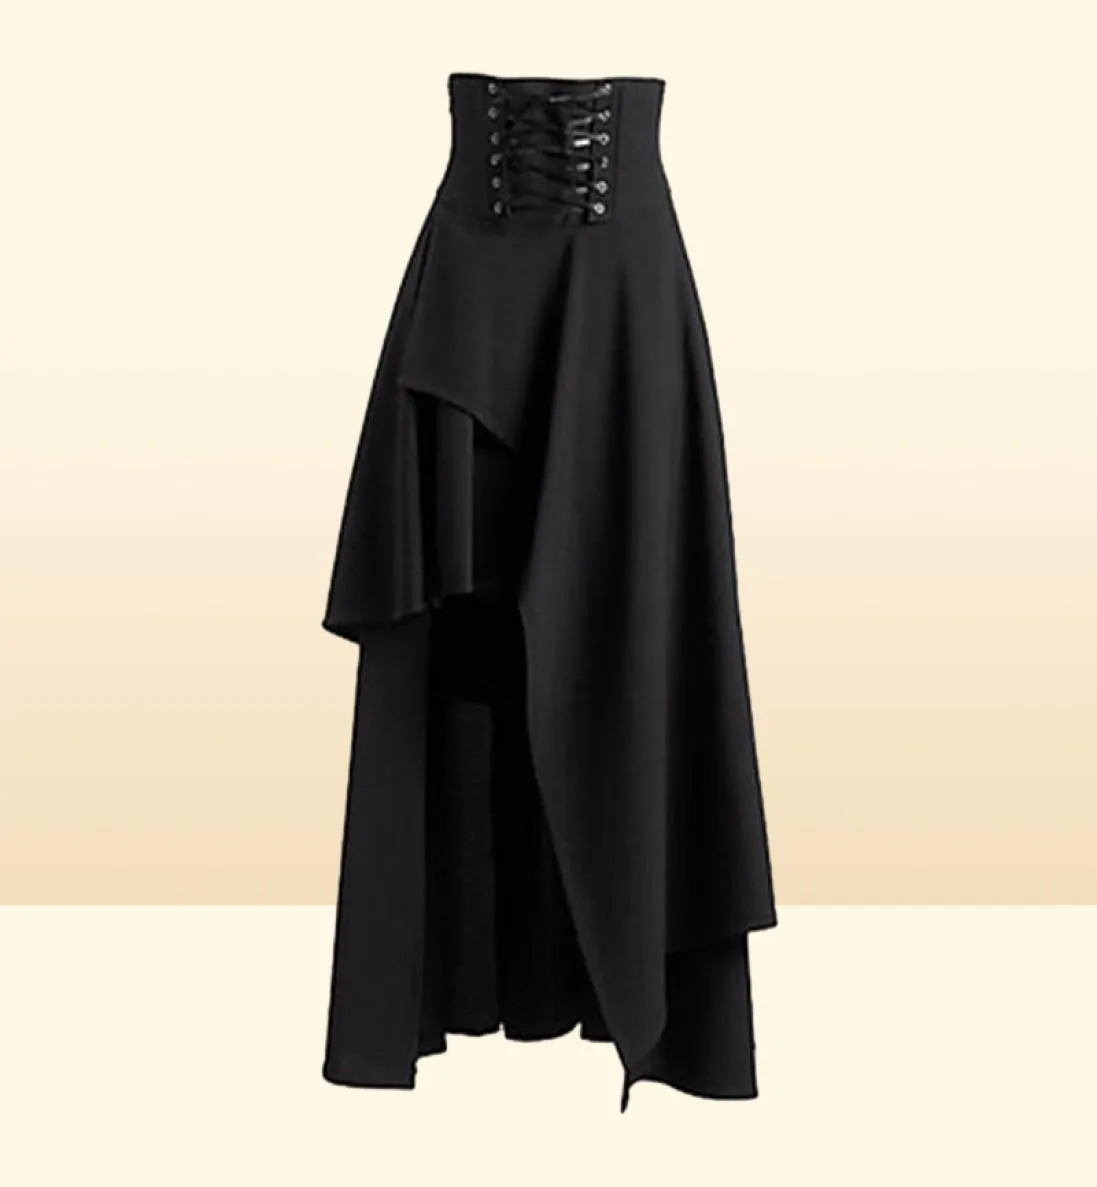 Jupes femme médiévale vintage jupe gothique vintage costume halloween renaissance steampunk high waist3279201